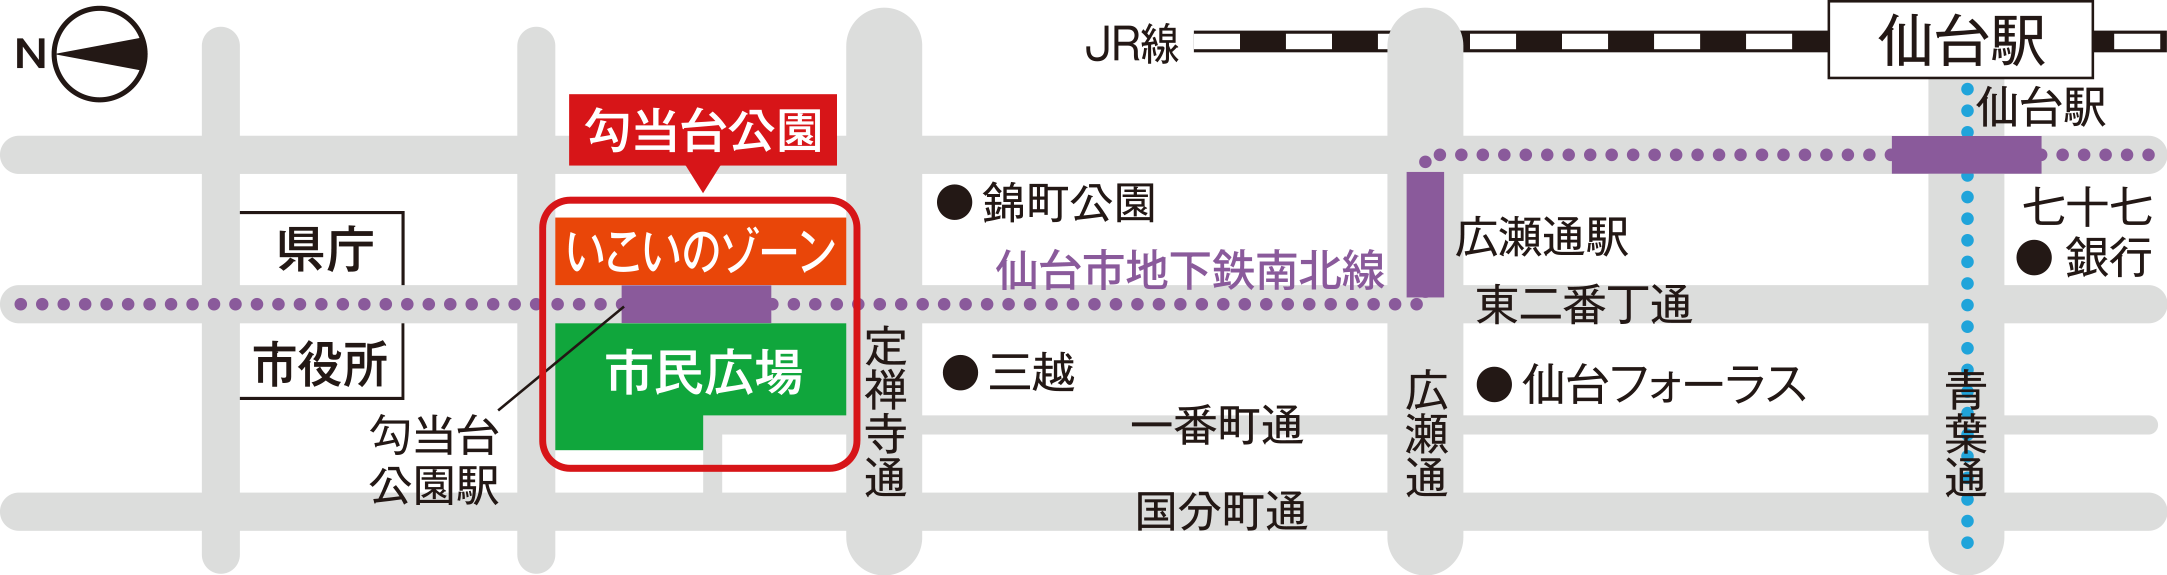 JR仙台駅からのアクセス 地図画像